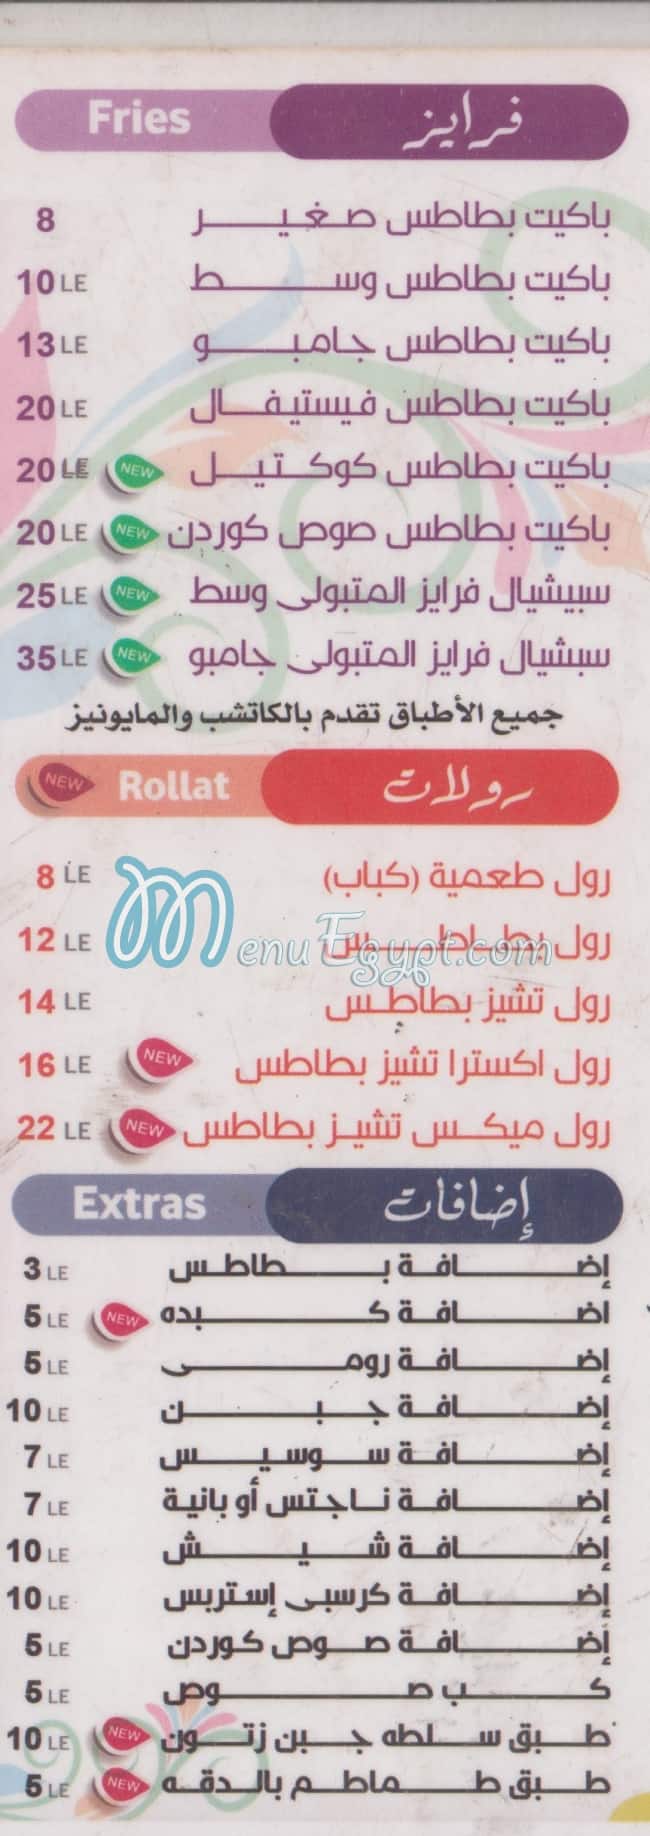 El Matboly menu Egypt